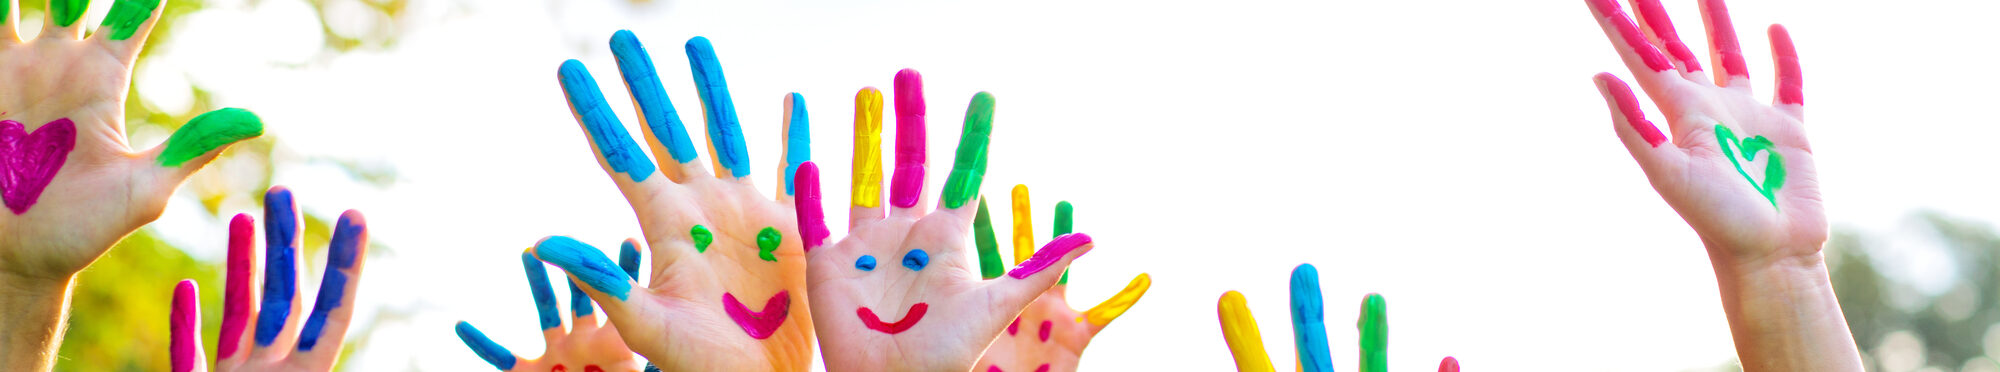 Das Bild zeigt bemalte Kinderhände